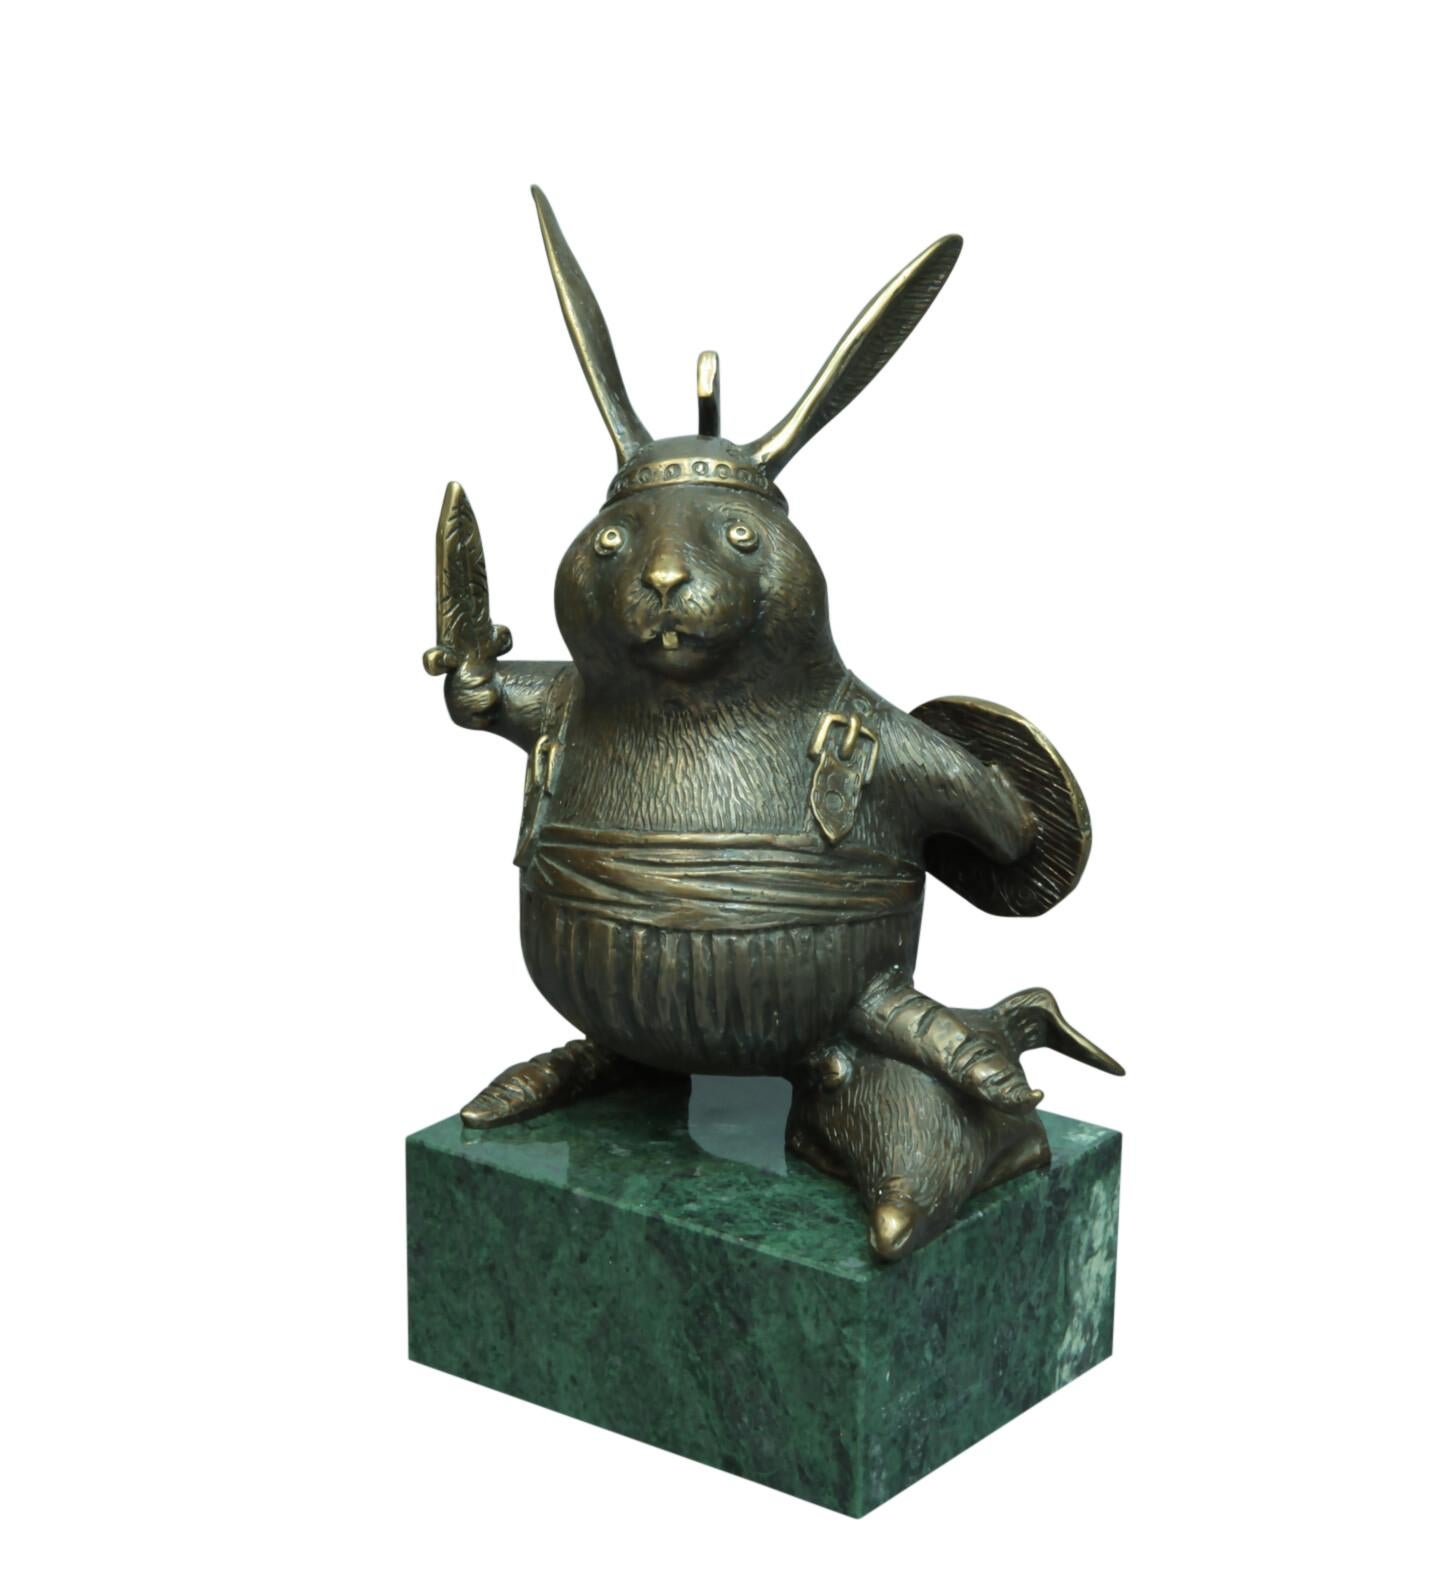 Volodymyr MYKYTENKO Figurative Sculpture - Winner, Bronze Sculpture by Volodymyr Mykytenko, 2011